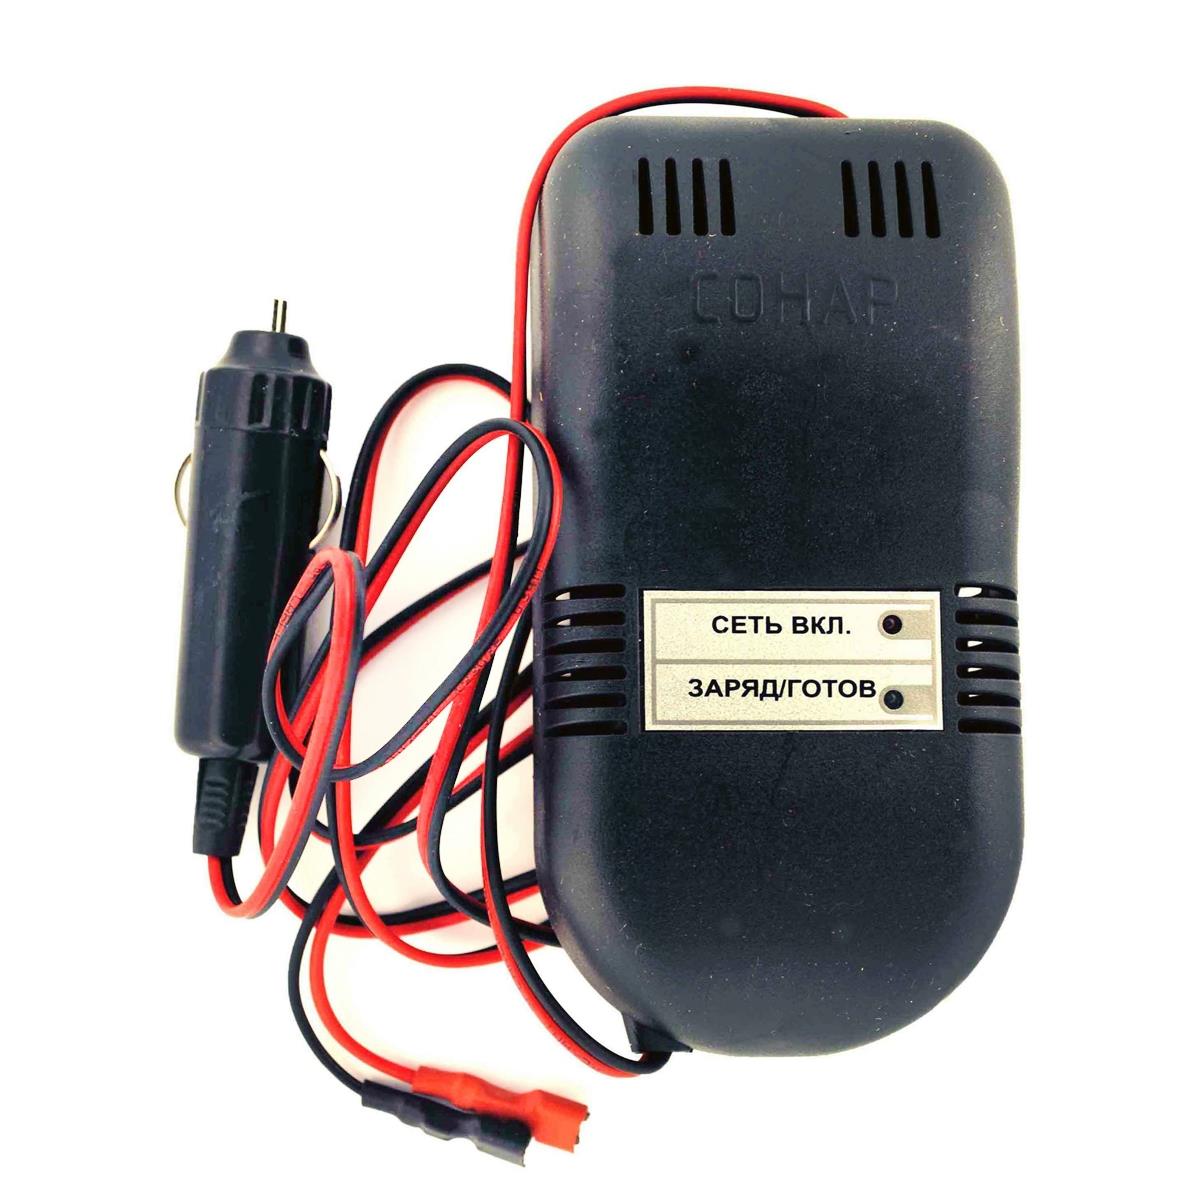 Зарядное устройство COHAP DC/DC 12 V (205.05) электронное зарядное устройство для свинцово кислотных аккумуляторов goodyear ch 6a gy003002